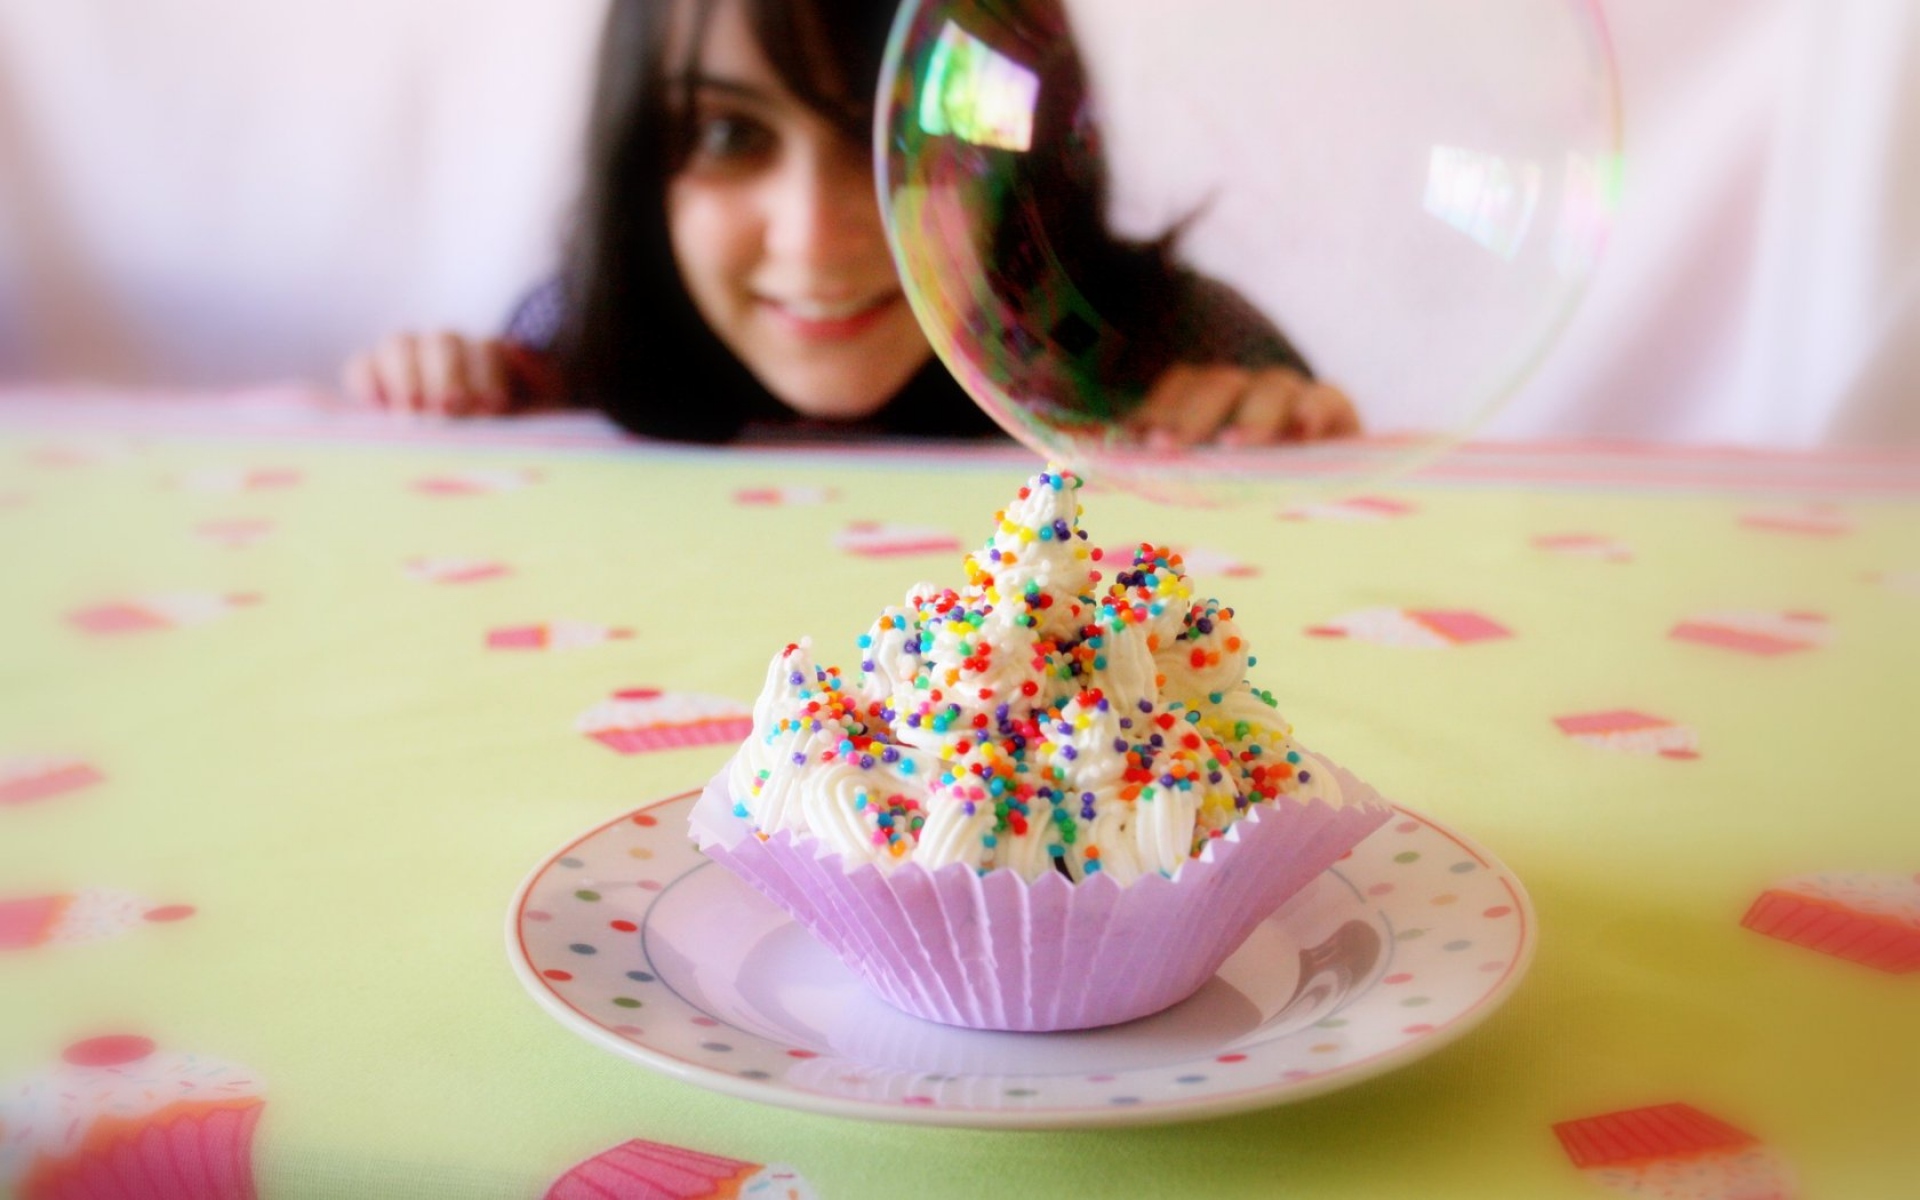 Картинки Кекс, сливки, девушка, мыльный пузырь, сладкий, улыбка, десерт фото и обои на рабочий стол